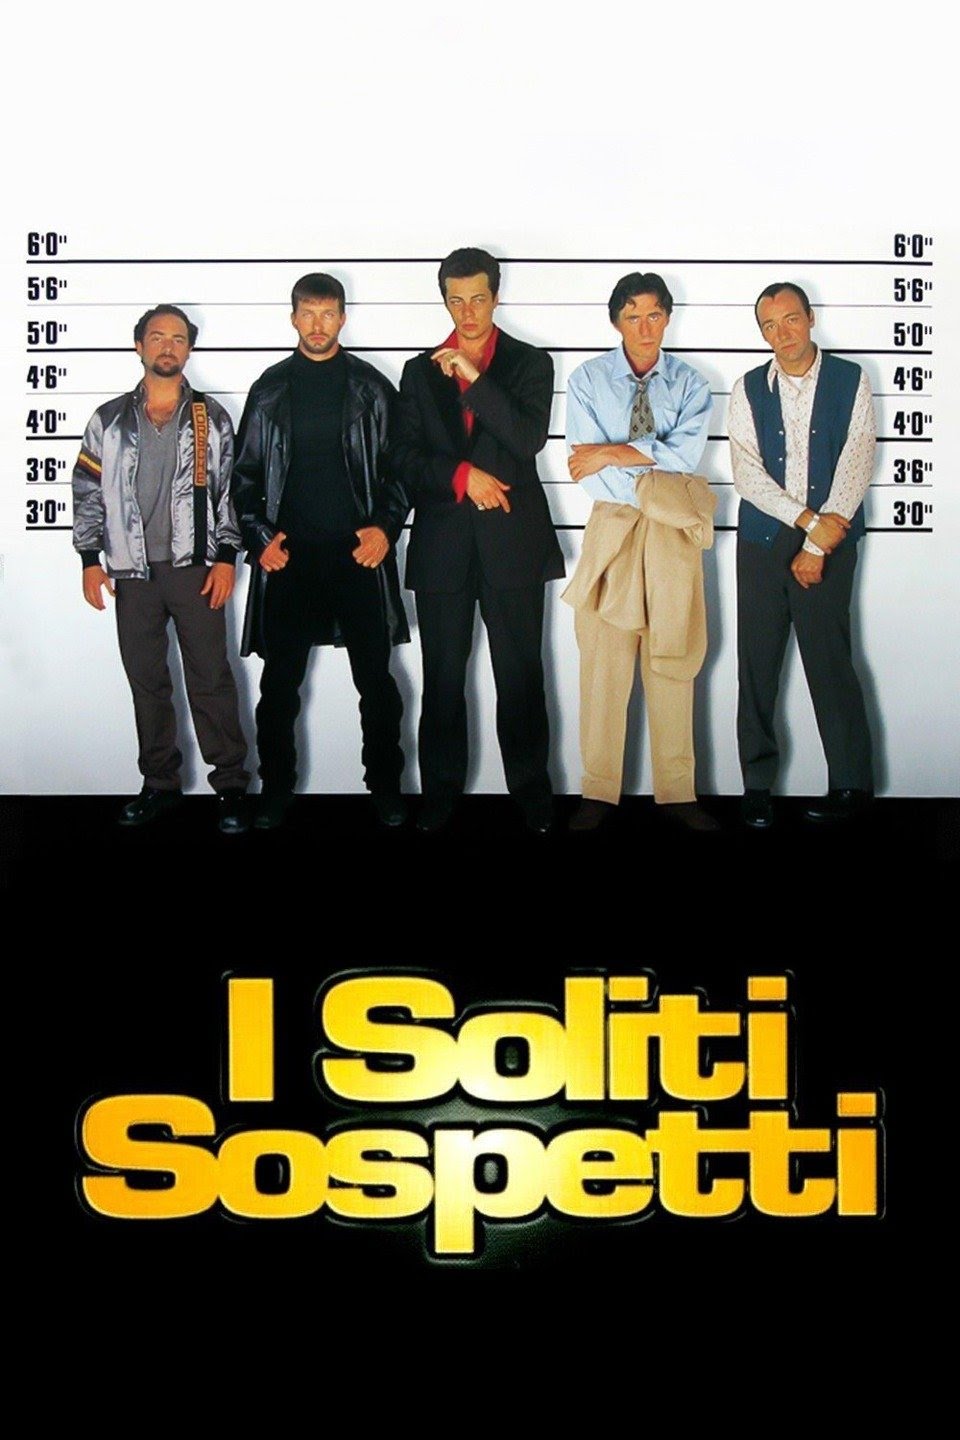 I soliti sospetti [HD] (1995)